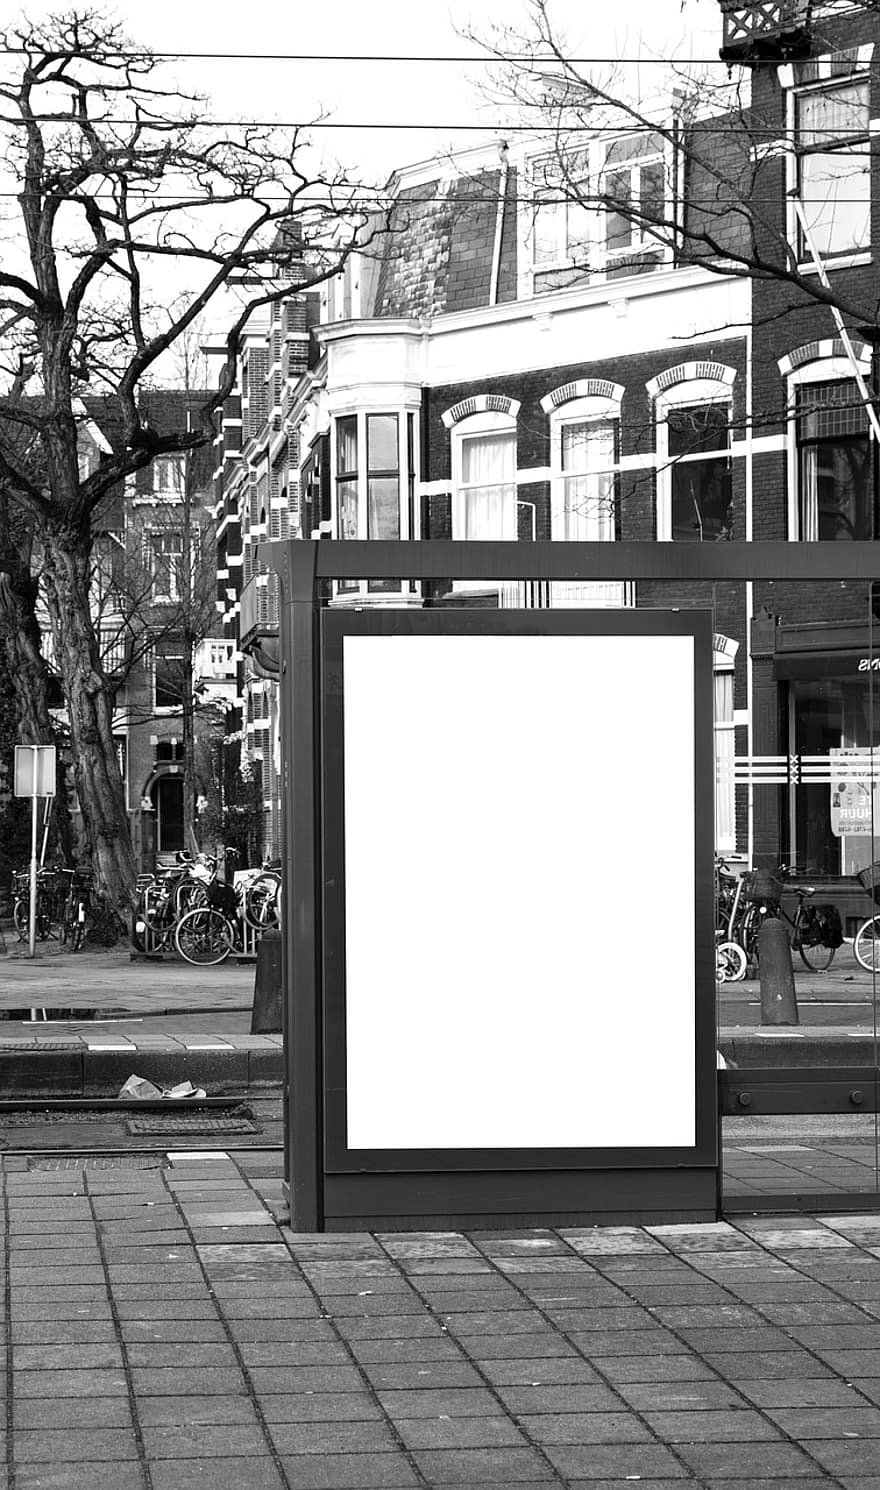 anuncio, publicidad, bandera, cartelera, parada de autobús, Europa, copia espacio